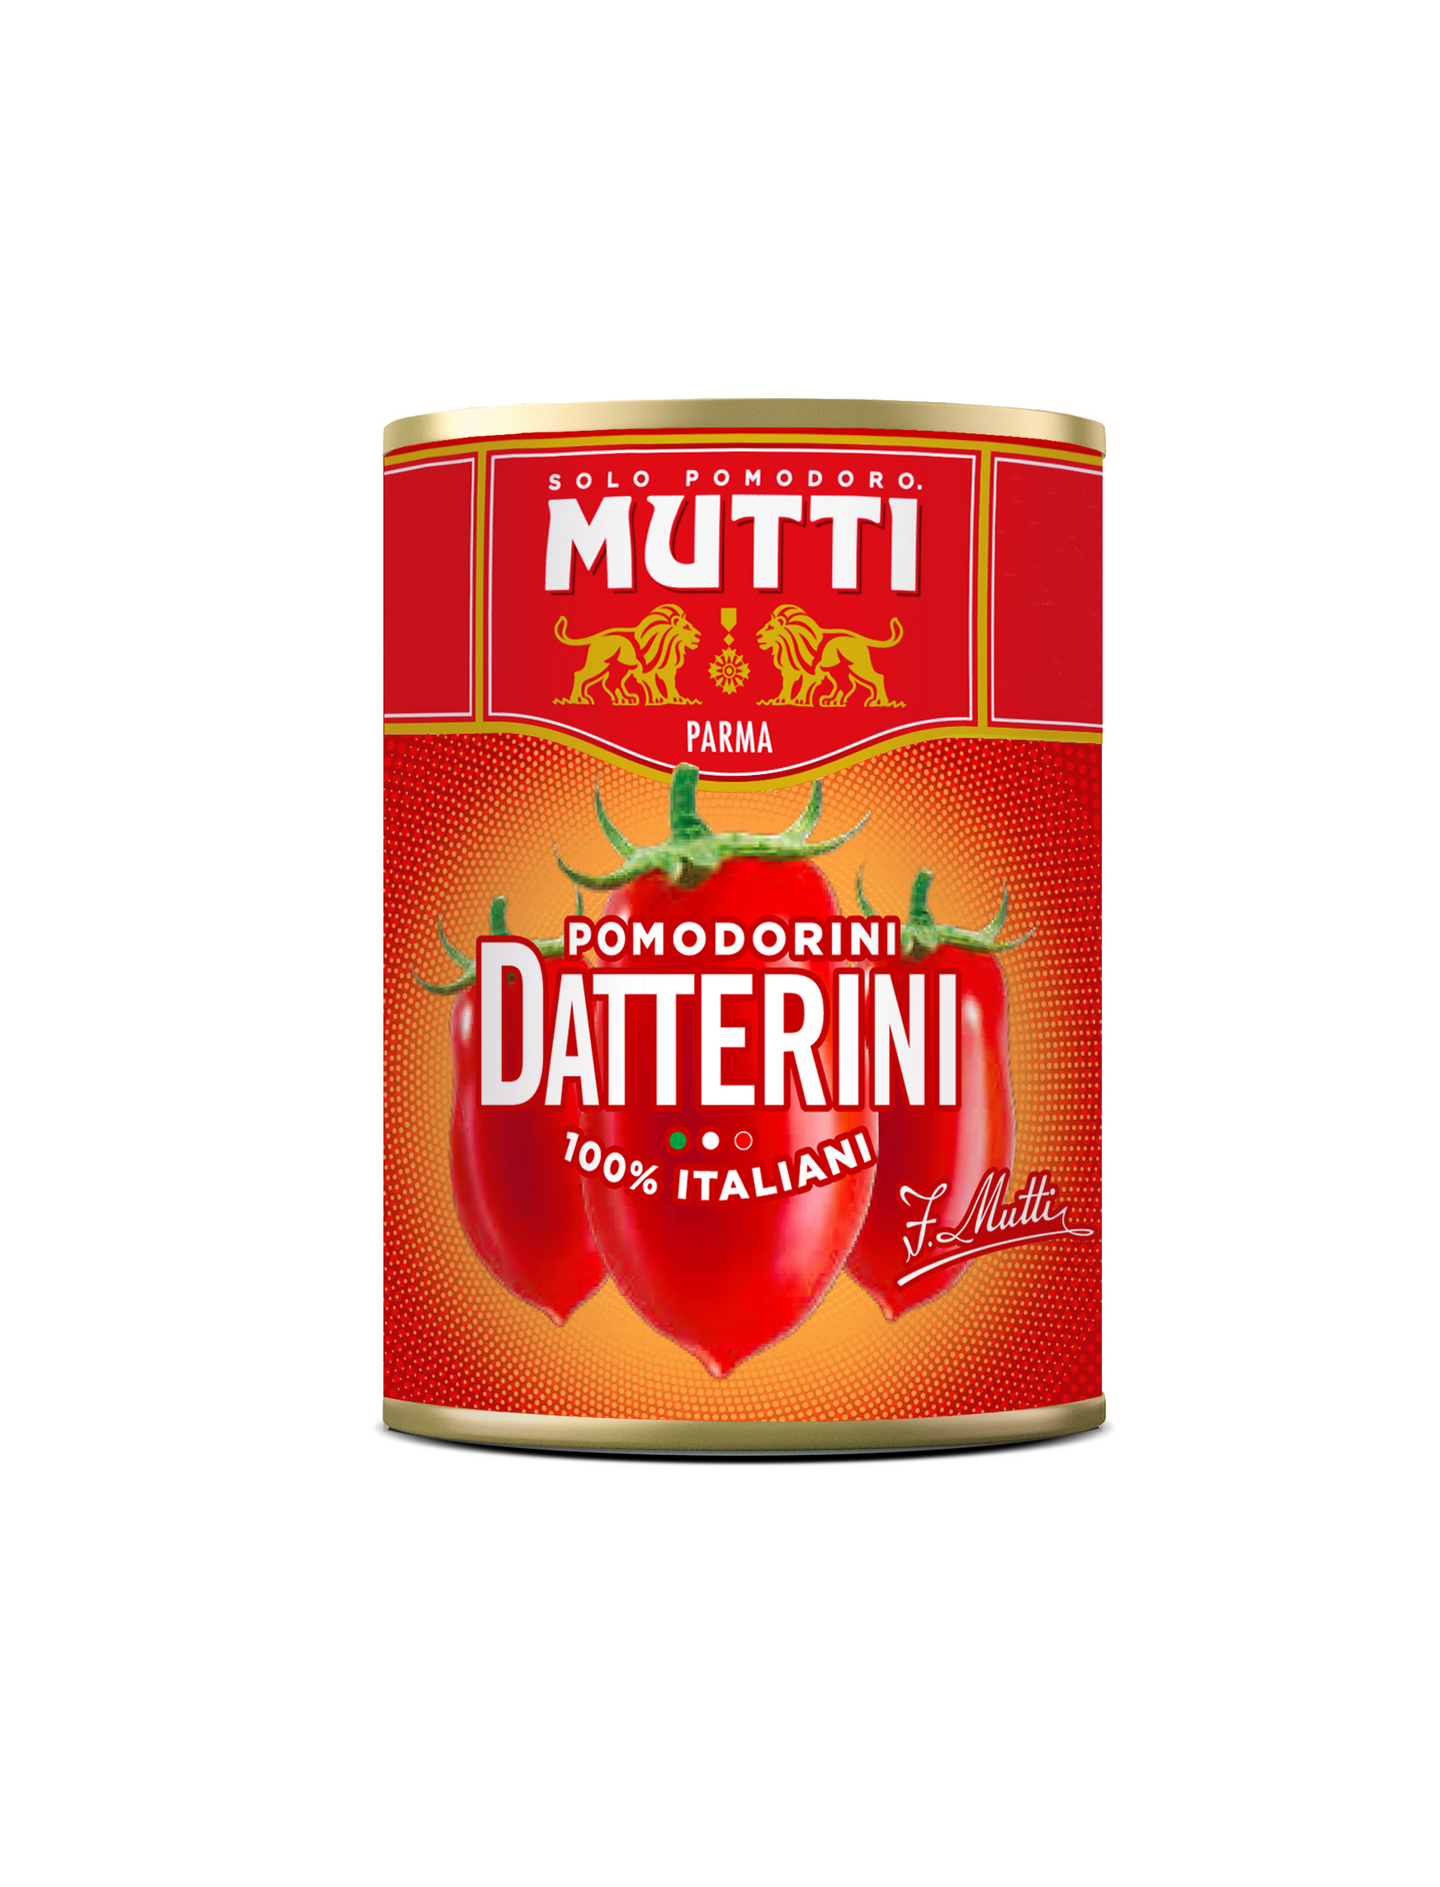 Mutti kokonaiset Datterini tomaatit 400g